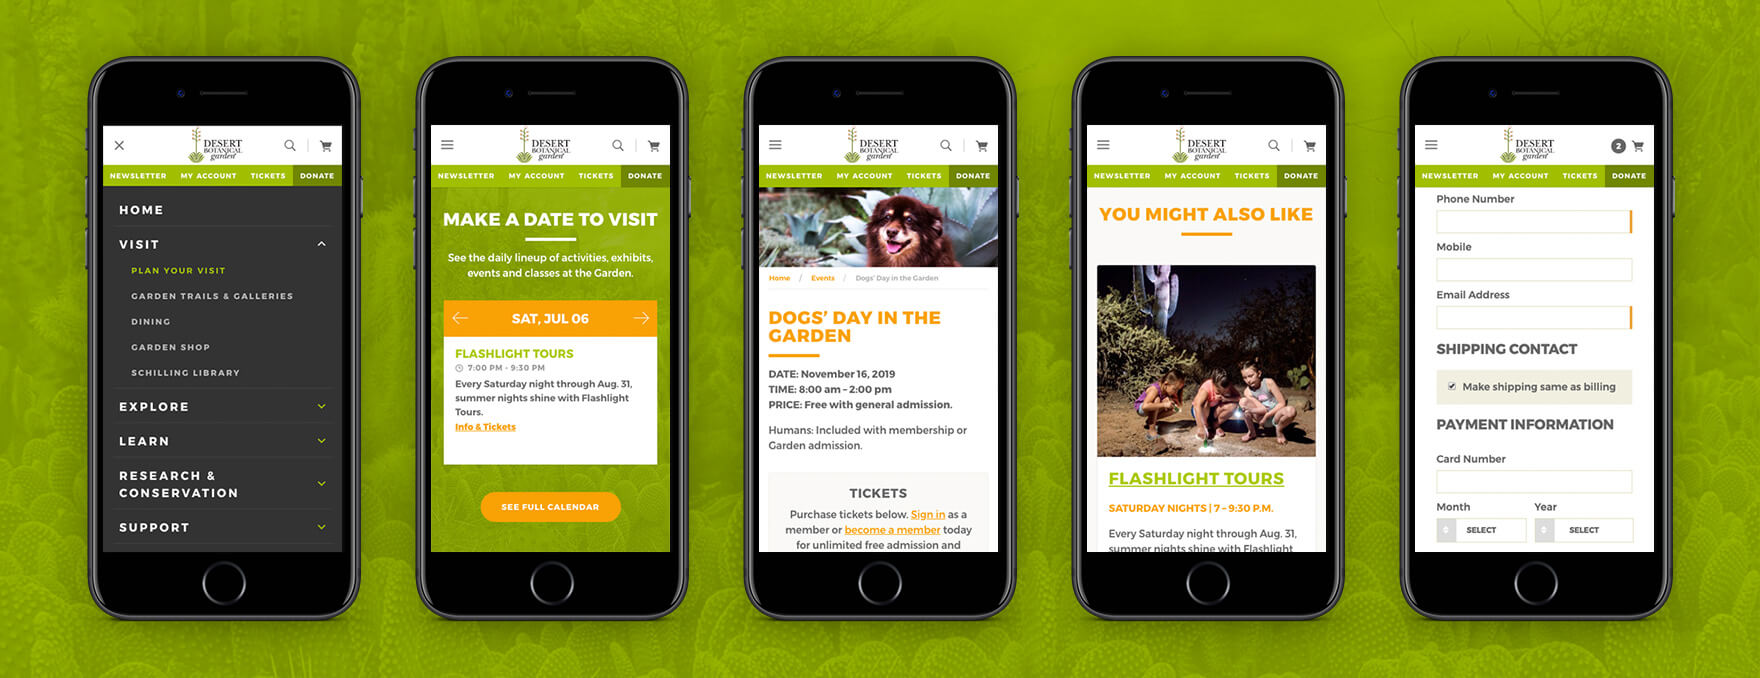 Desert Botanical Garden website is designed to be responsive for mobile